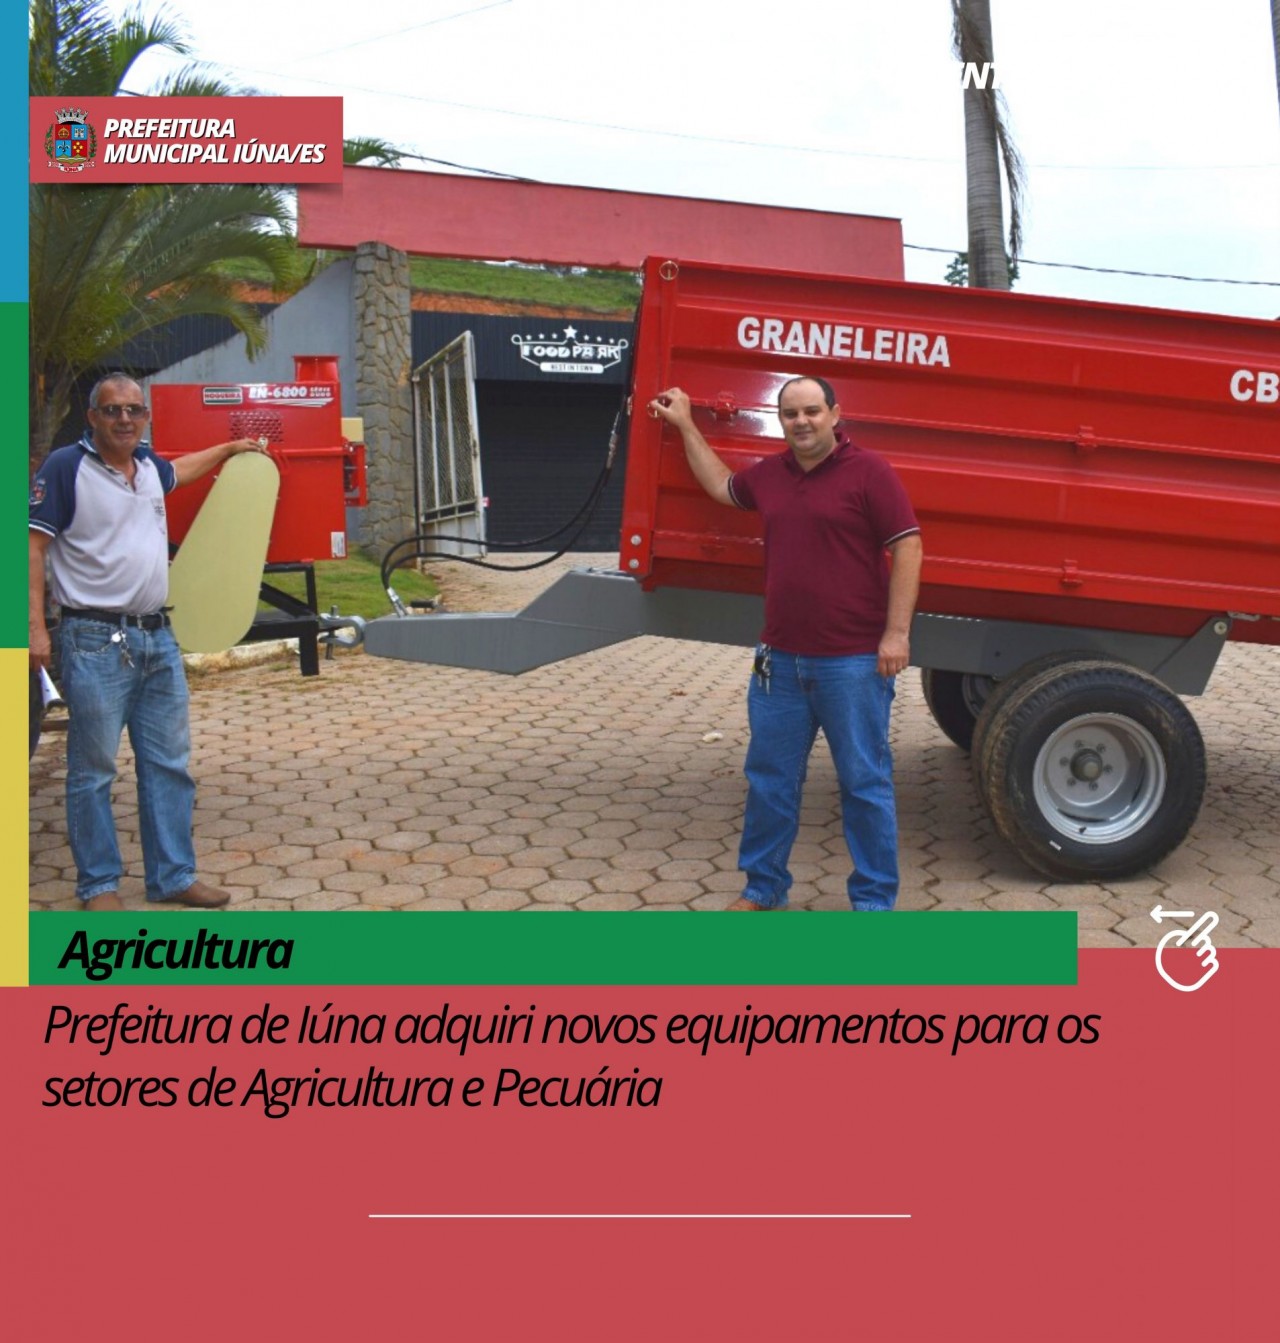 Prefeitura de Iúna adquiri novos equipamentos para os setores de Agricultura e Pecuária